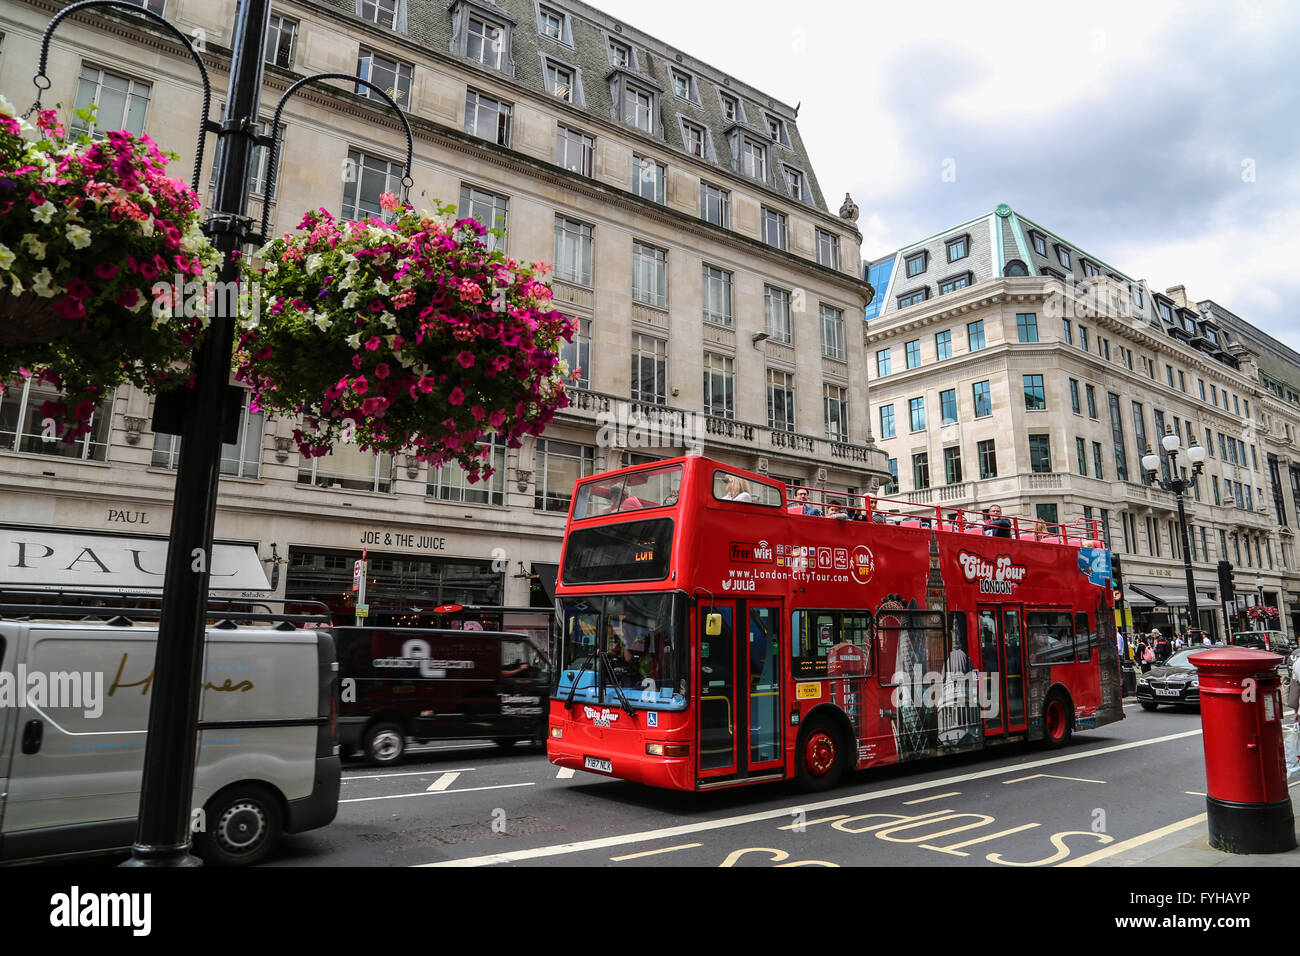 Un classique double decker bus rouges de Londres sur Oxford Street. Banque D'Images